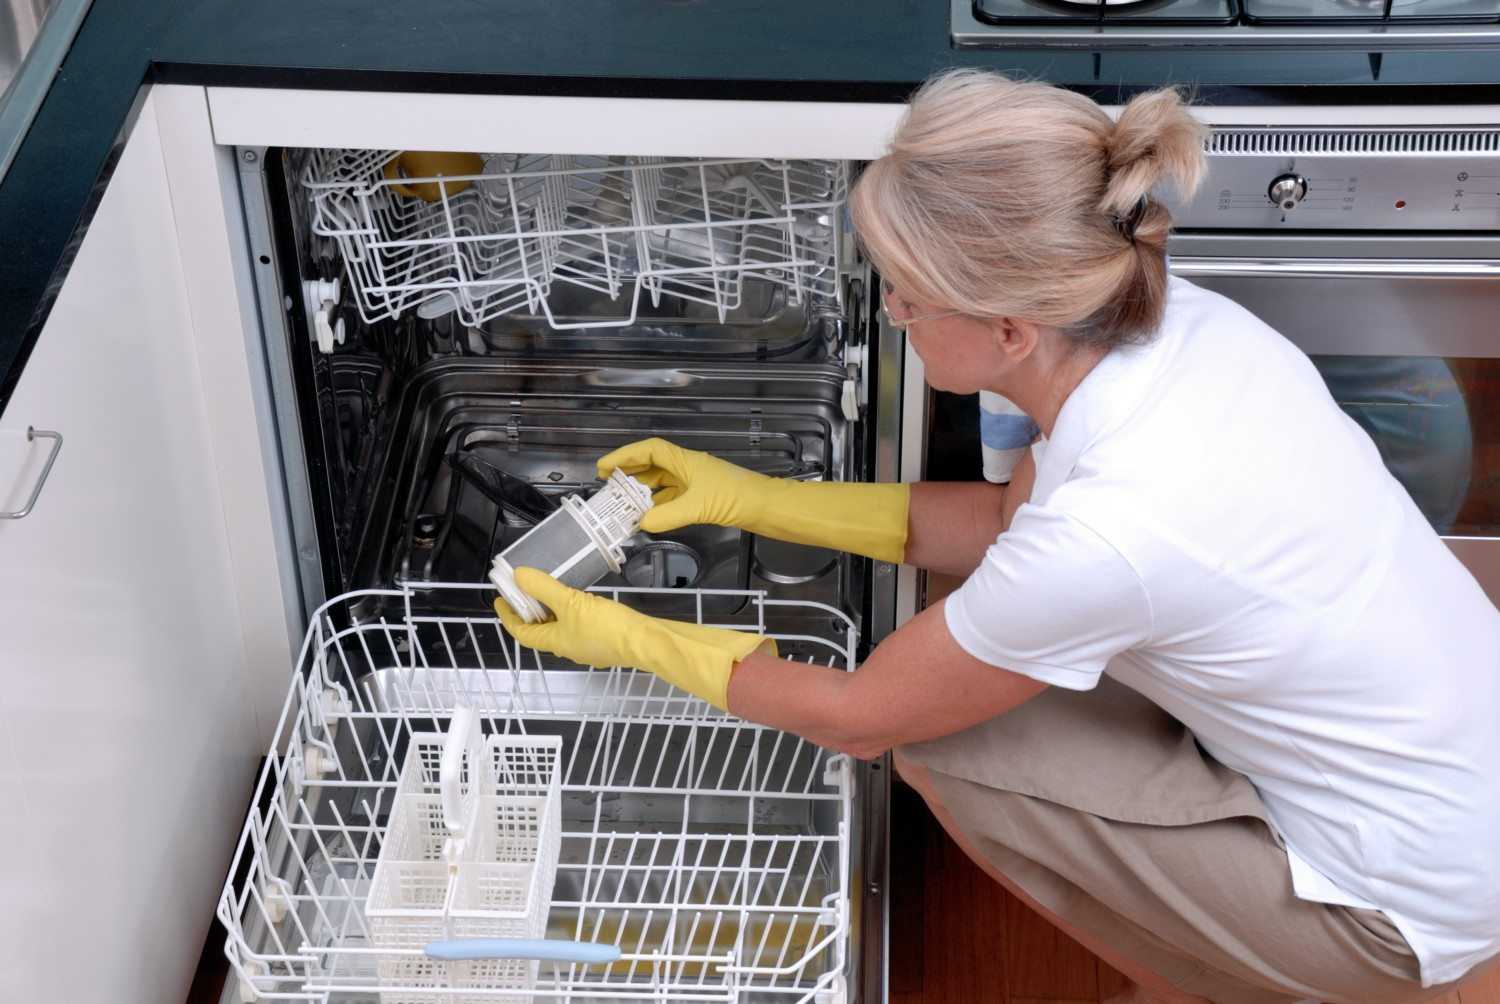 Чистые тарелки без усилий: как выбрать посудомоечную машину